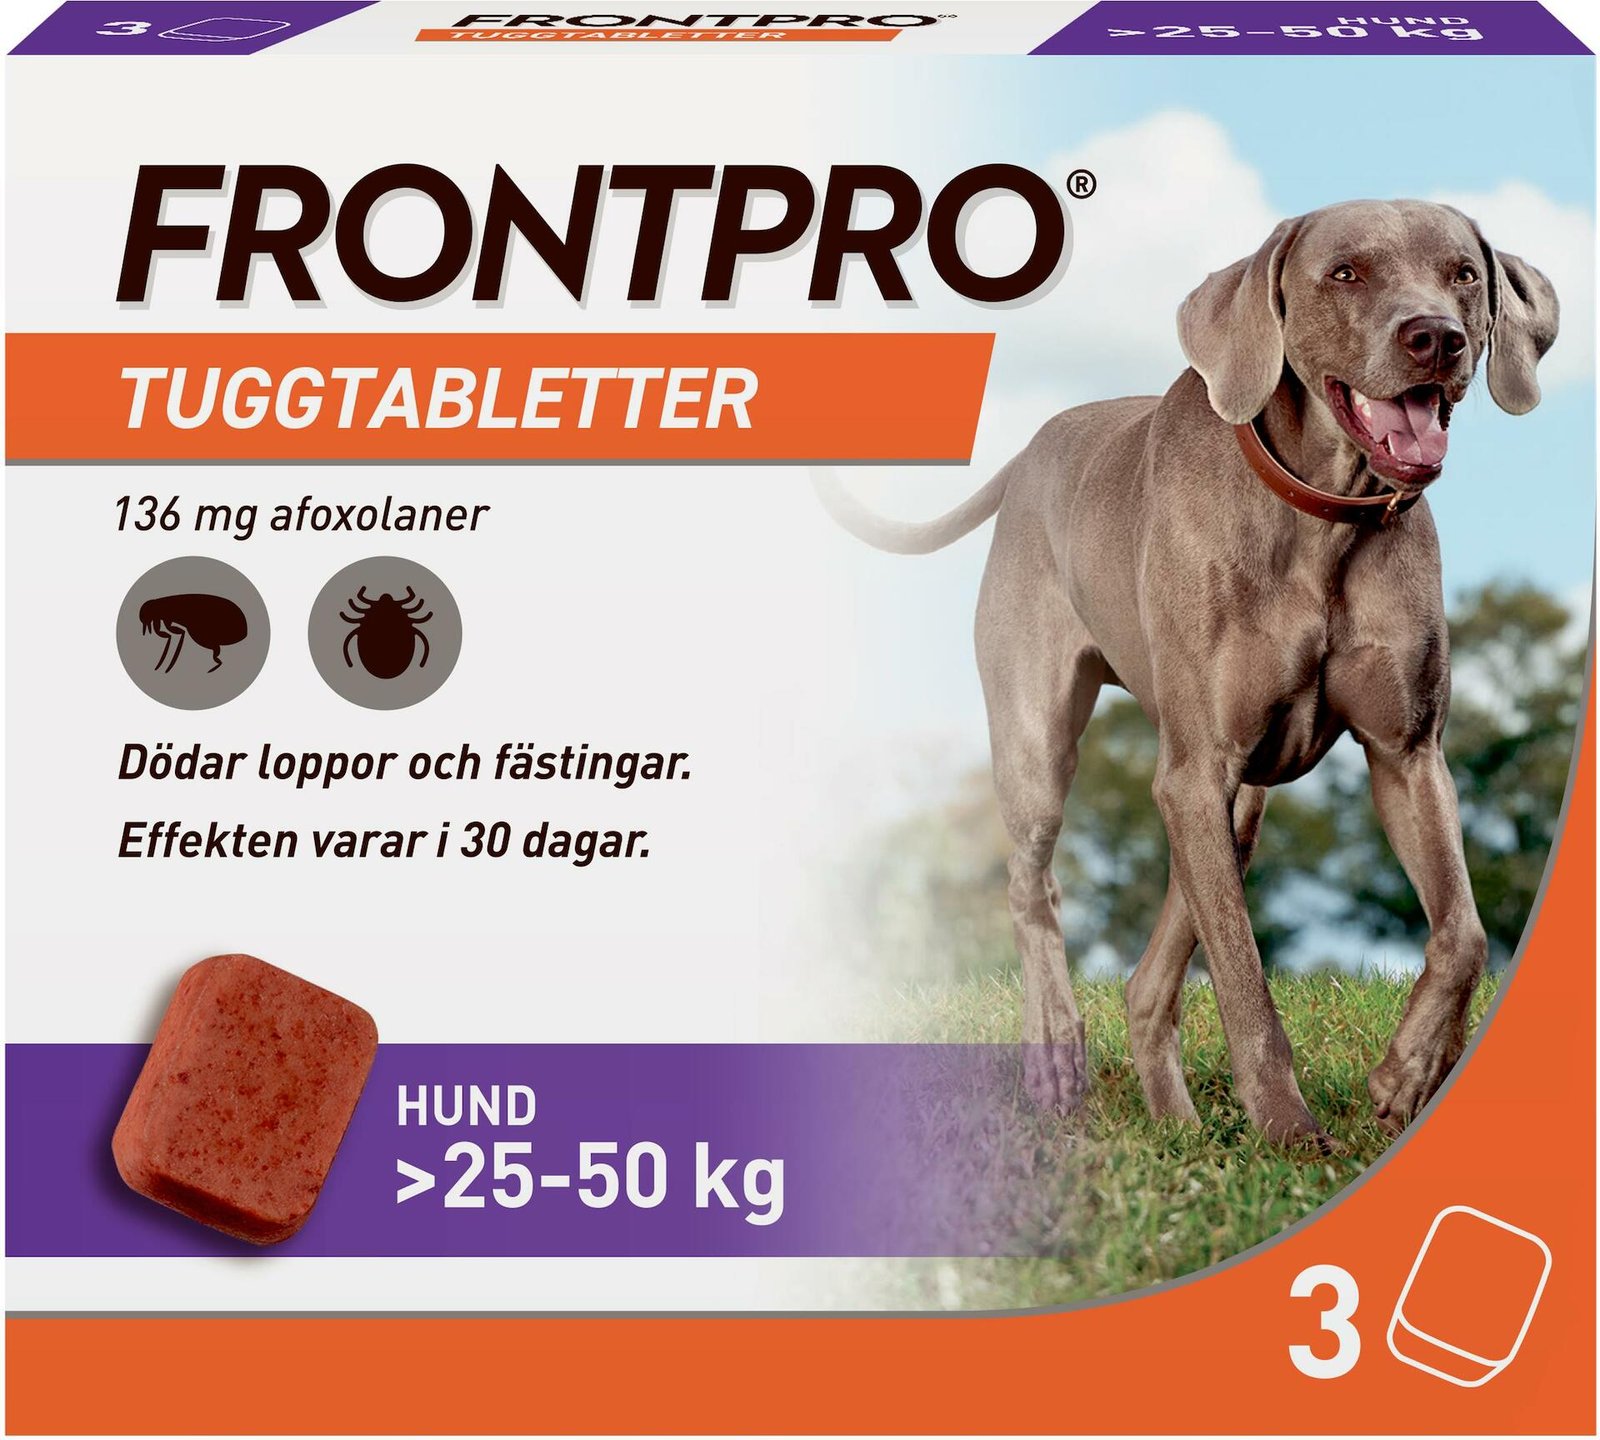 FRONTPRO Hund XL 25-50 kg 136 mg afoxolaner 3 tuggtabletter